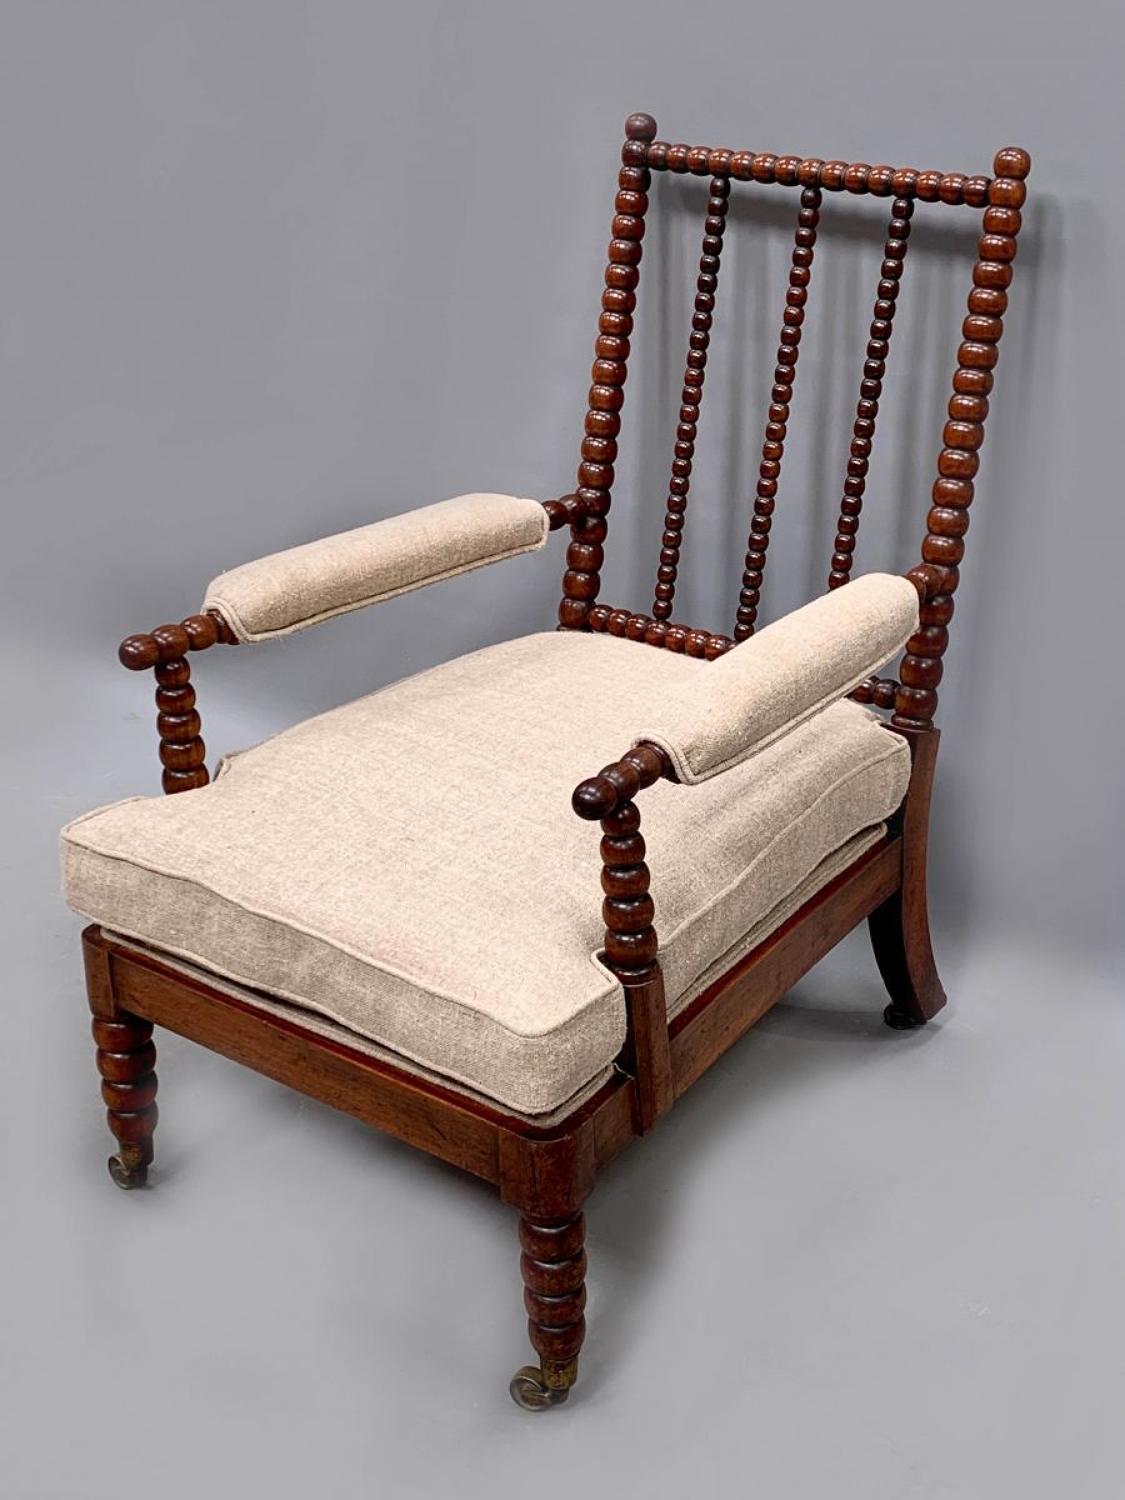 A Mahogany bobbin turned chair